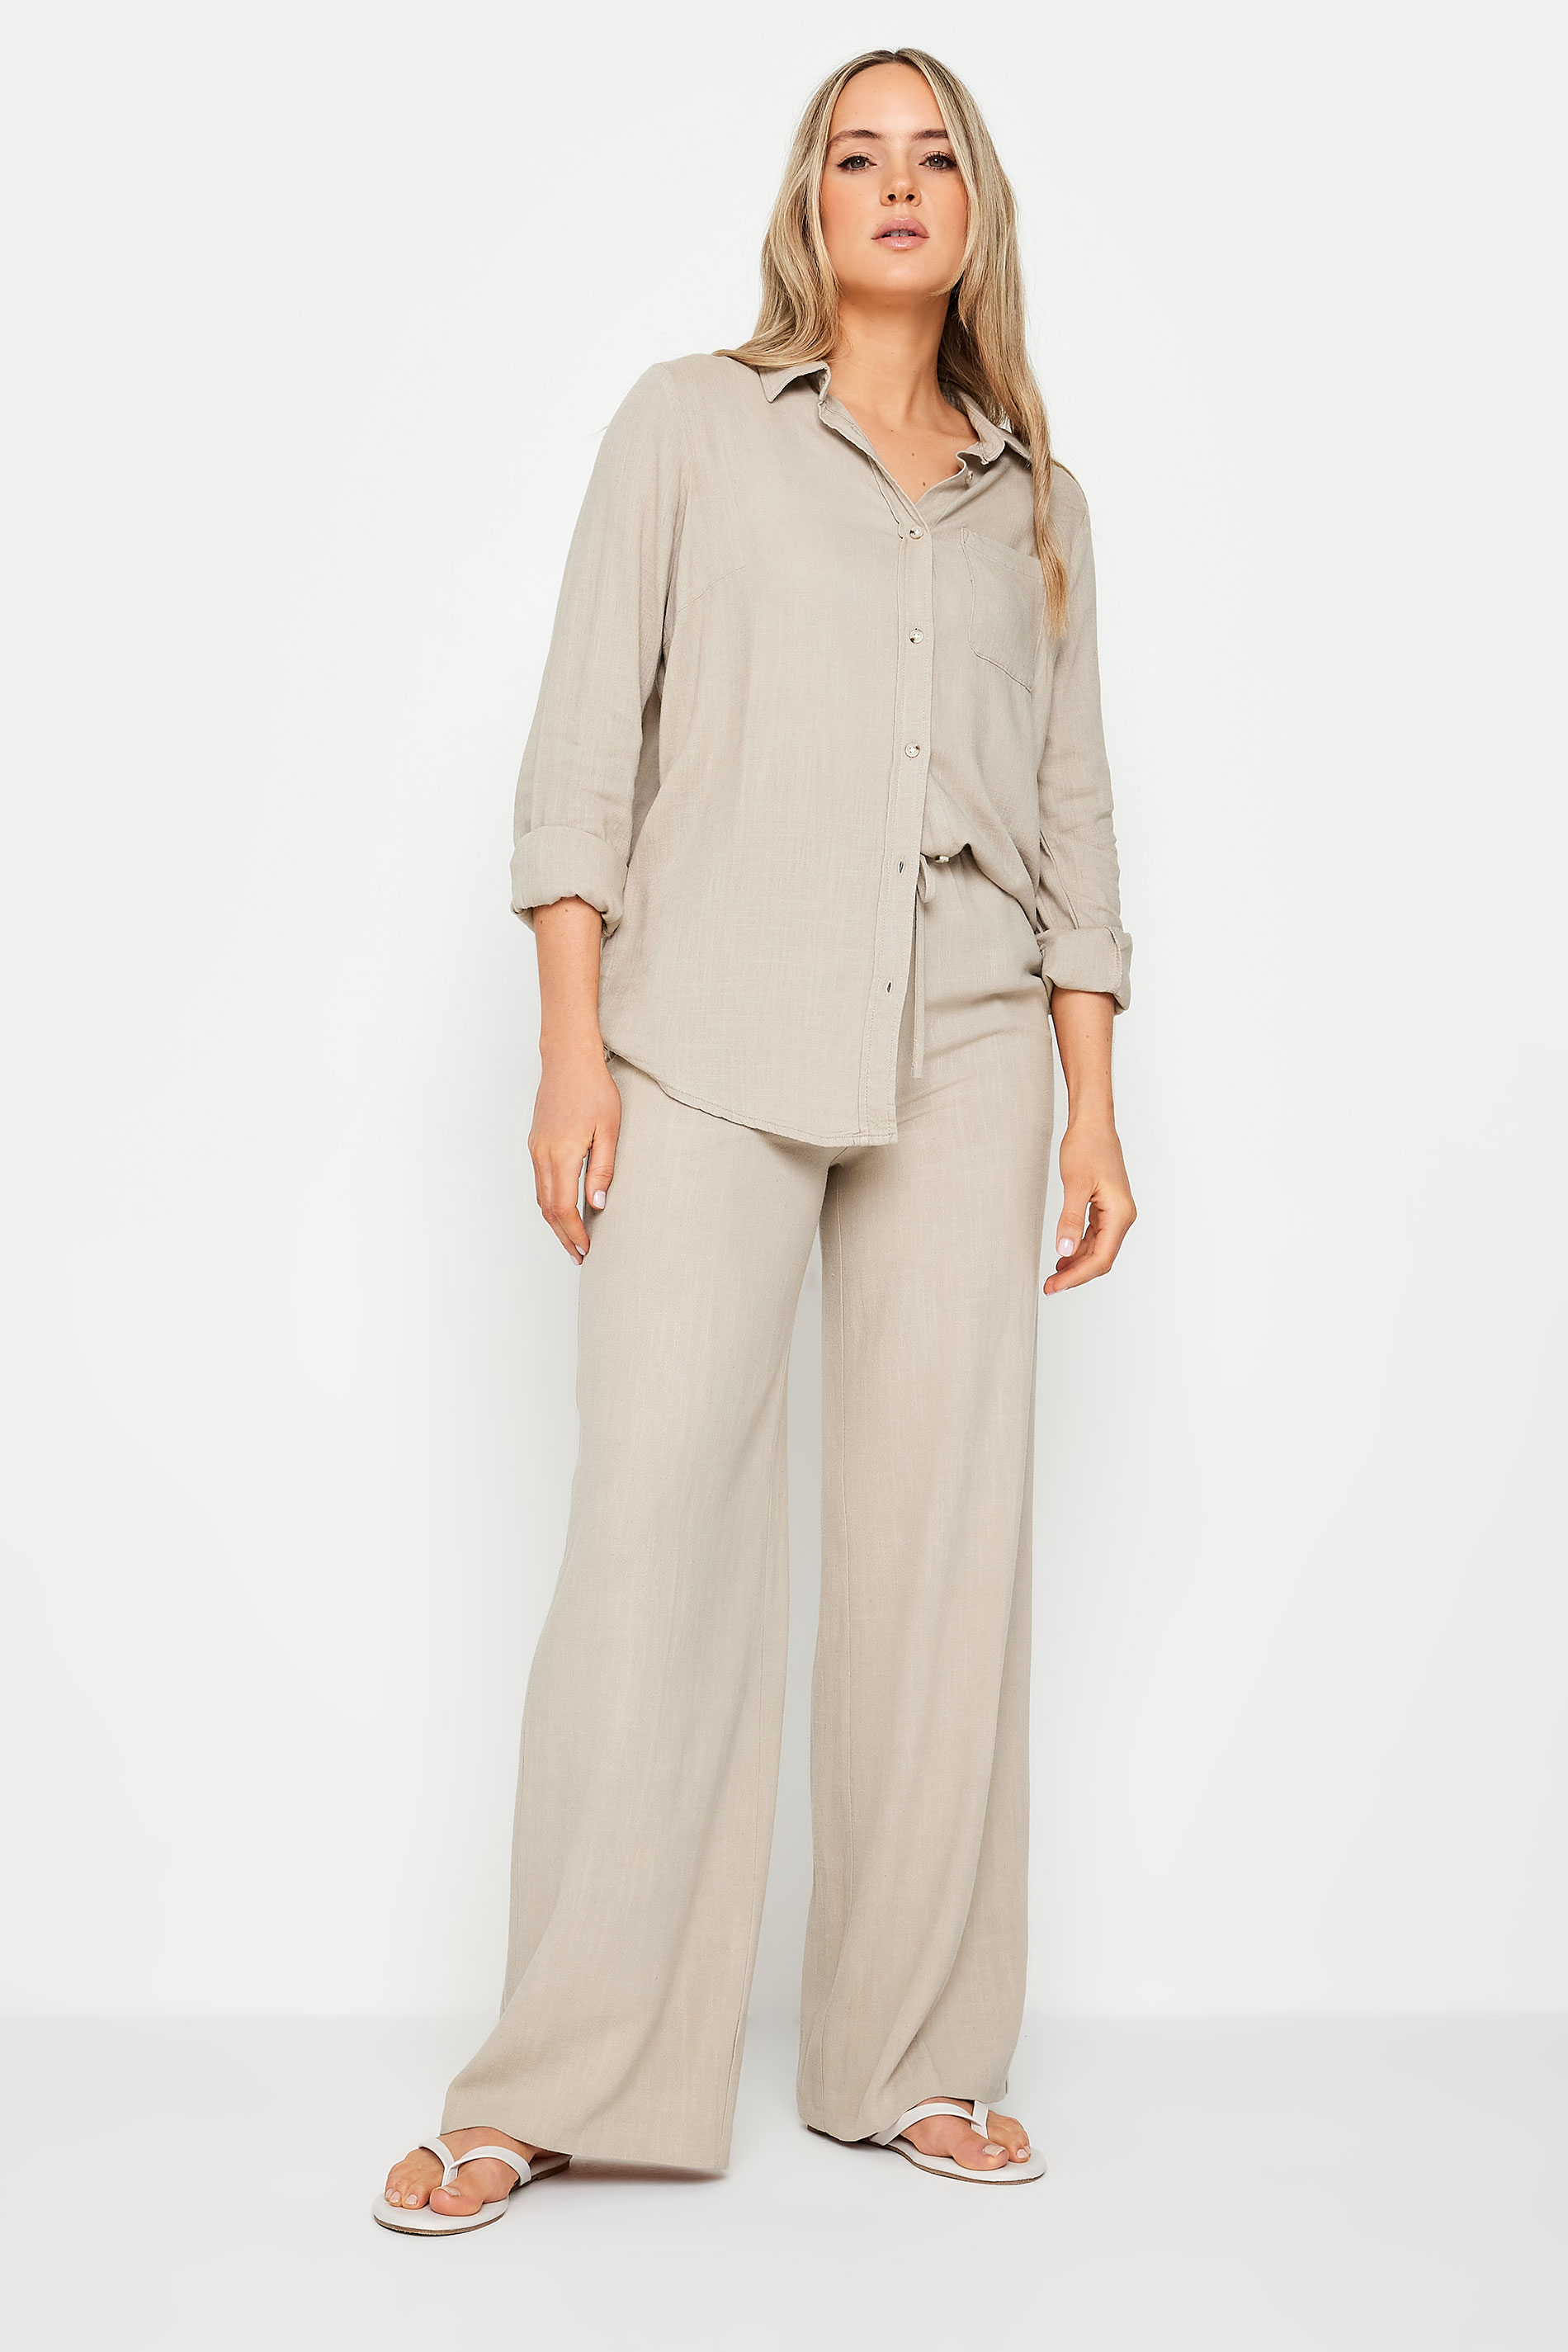 LTS Tall Womens Stone Brown Linen Shirt | Long Tall Sally 2